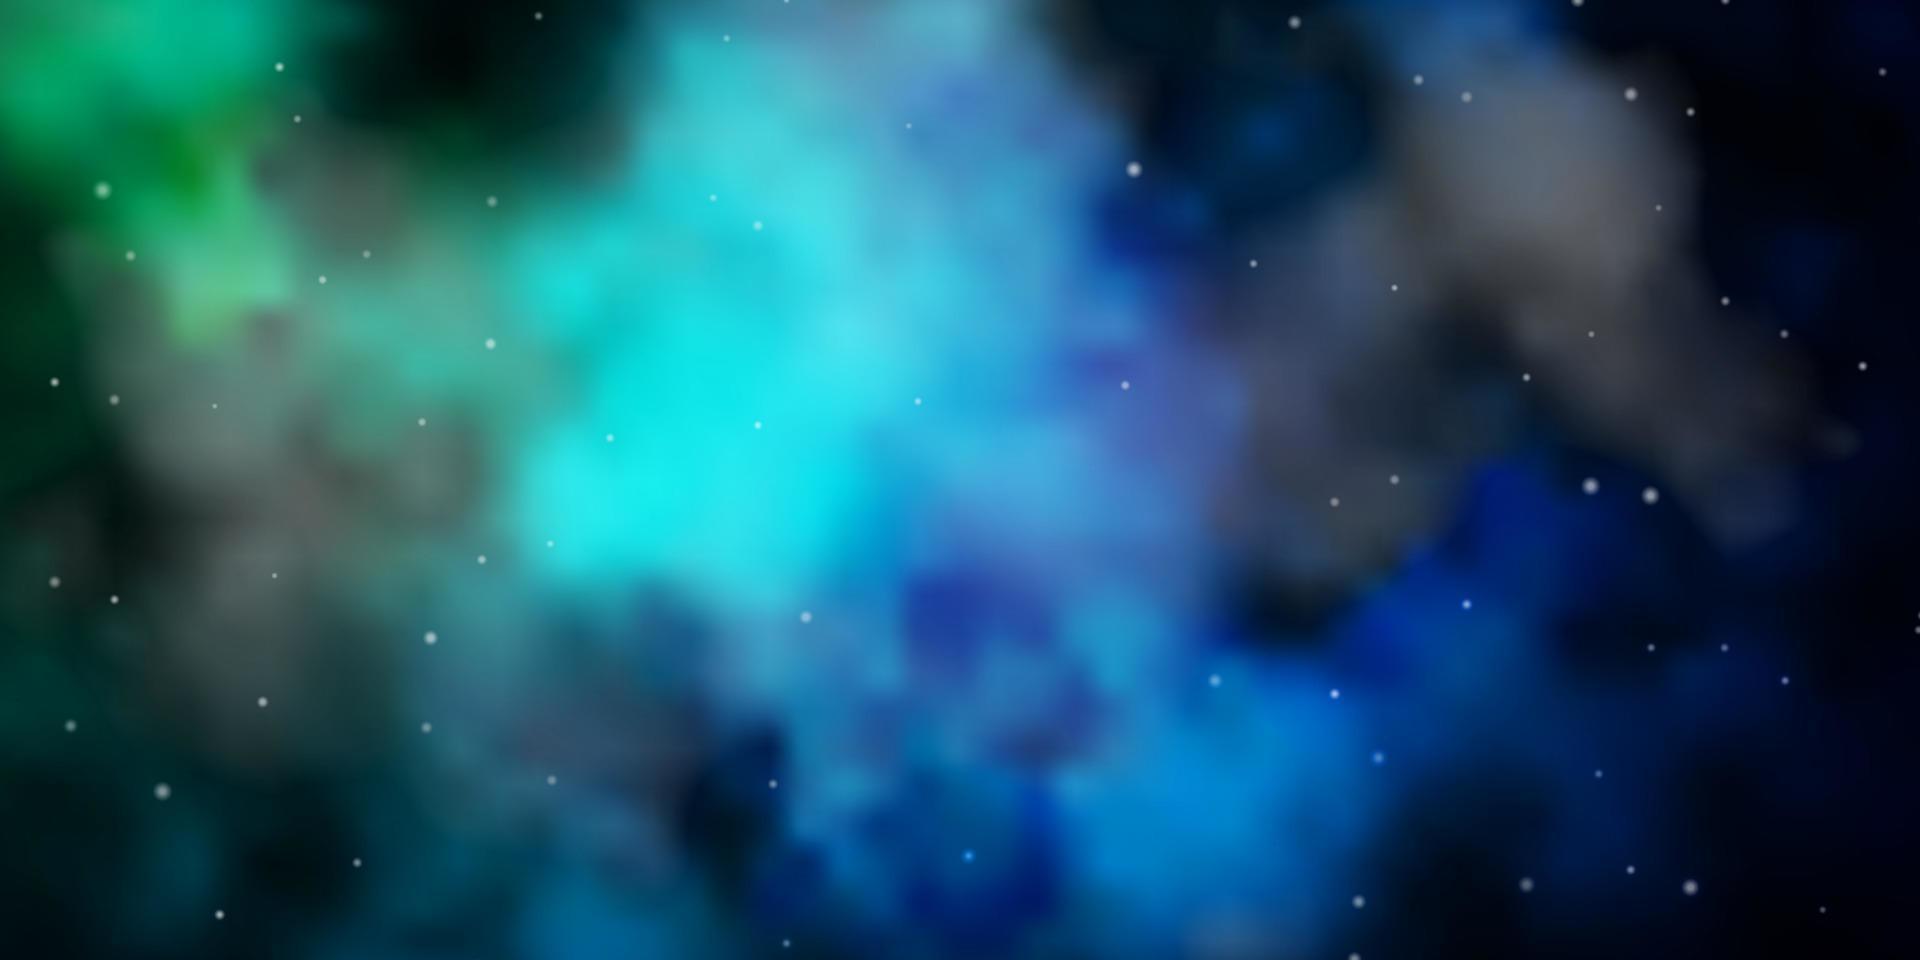 donkerblauwe, groene vectortextuur met prachtige sterren. vector